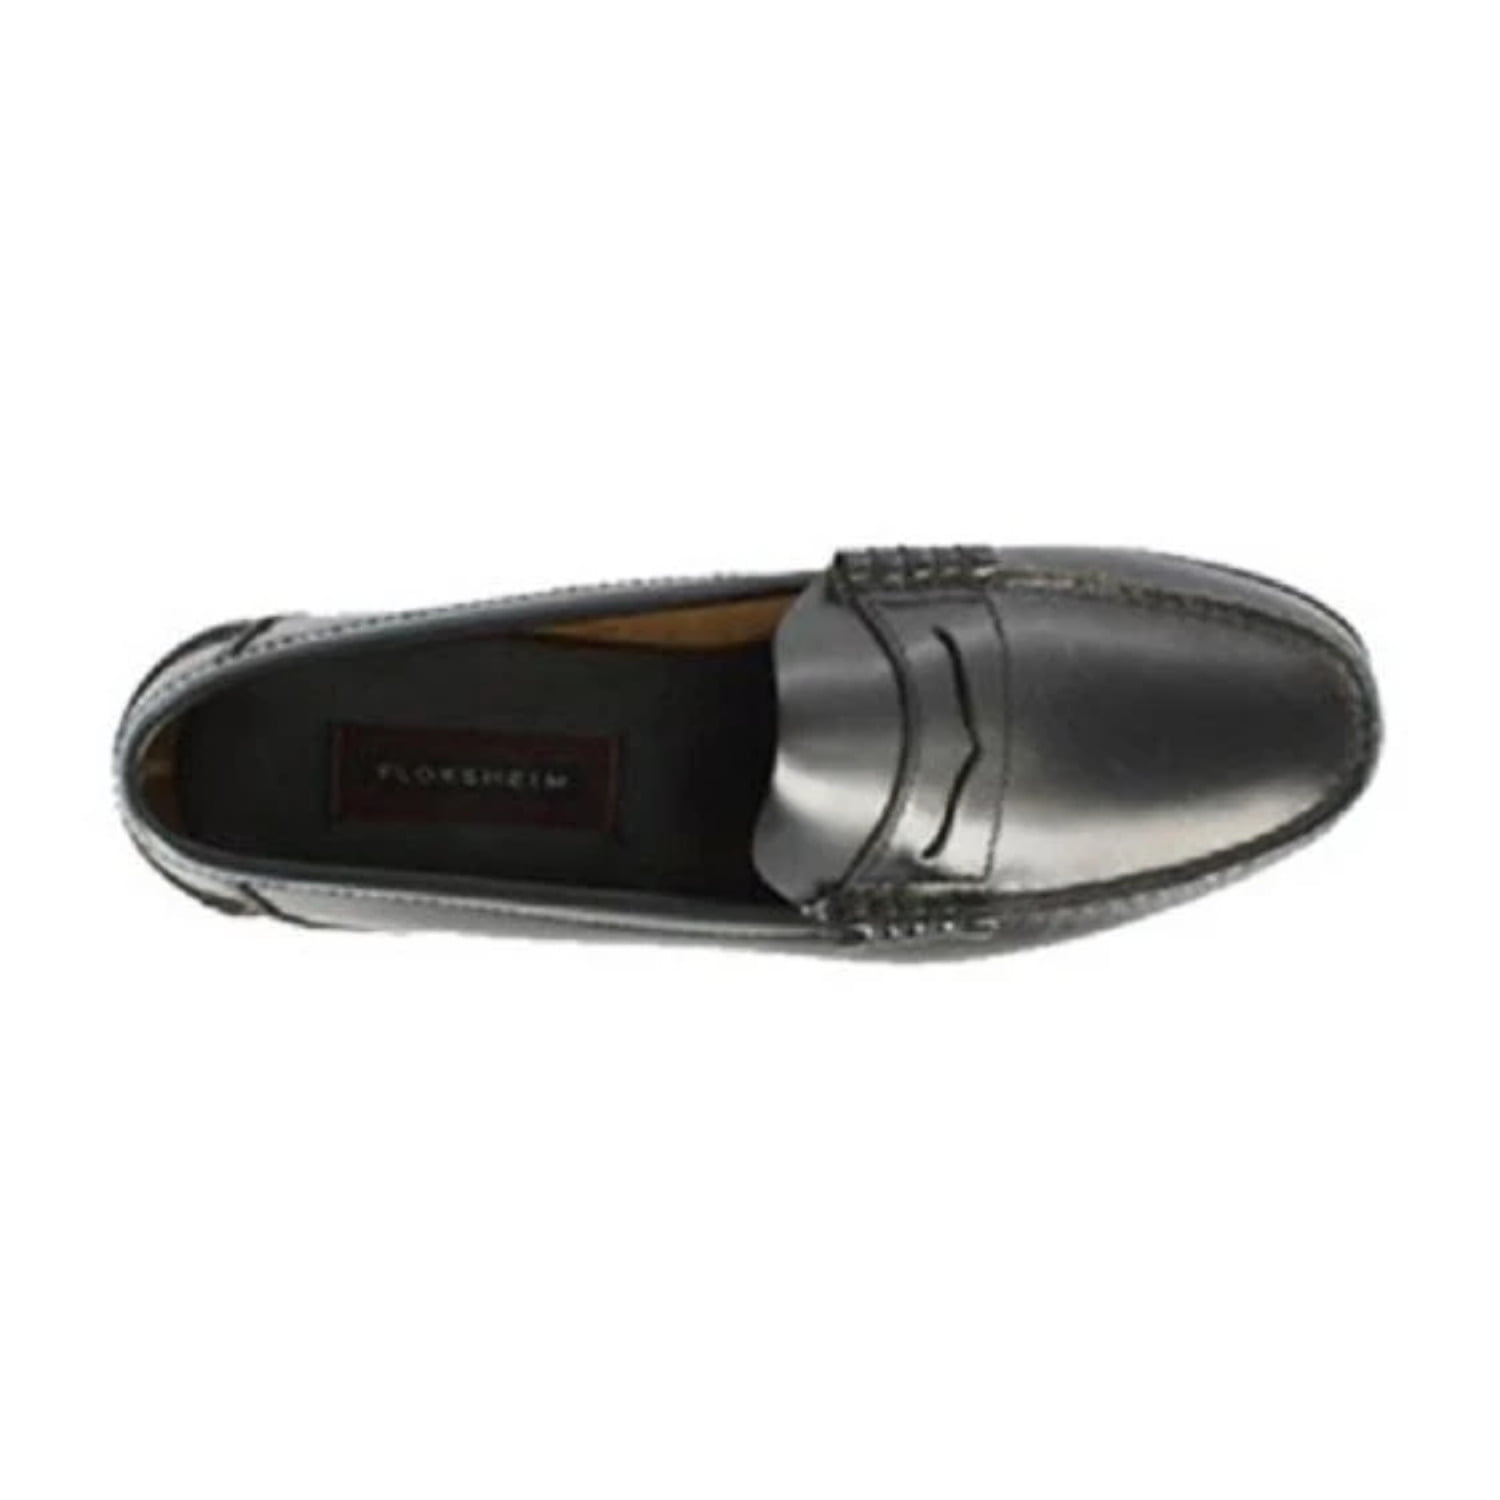 Florsheim Men's Berkley Moc Toe Penny Loafer Shoes Black 17058-01